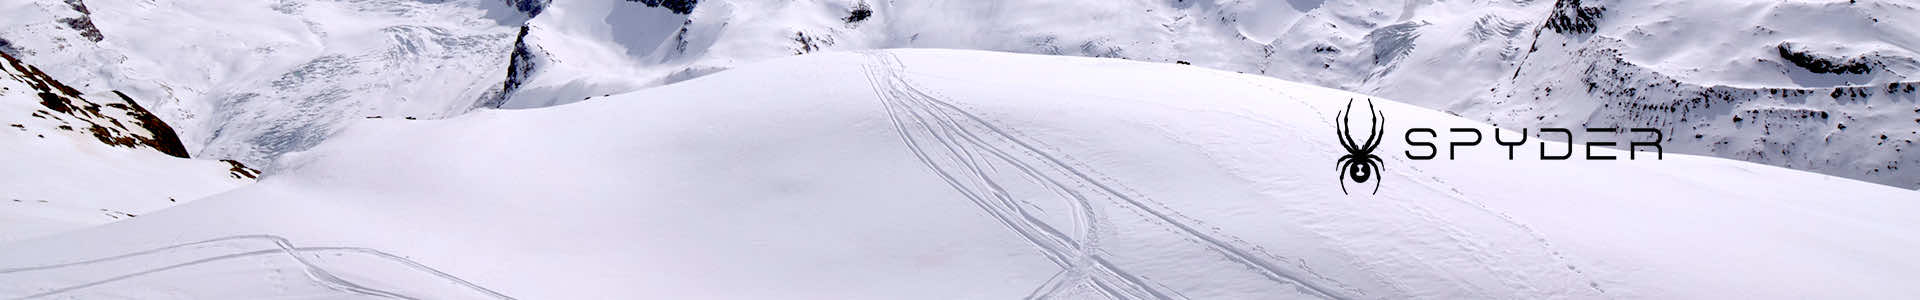 Spyder Wengen Ski Wear & Accessories